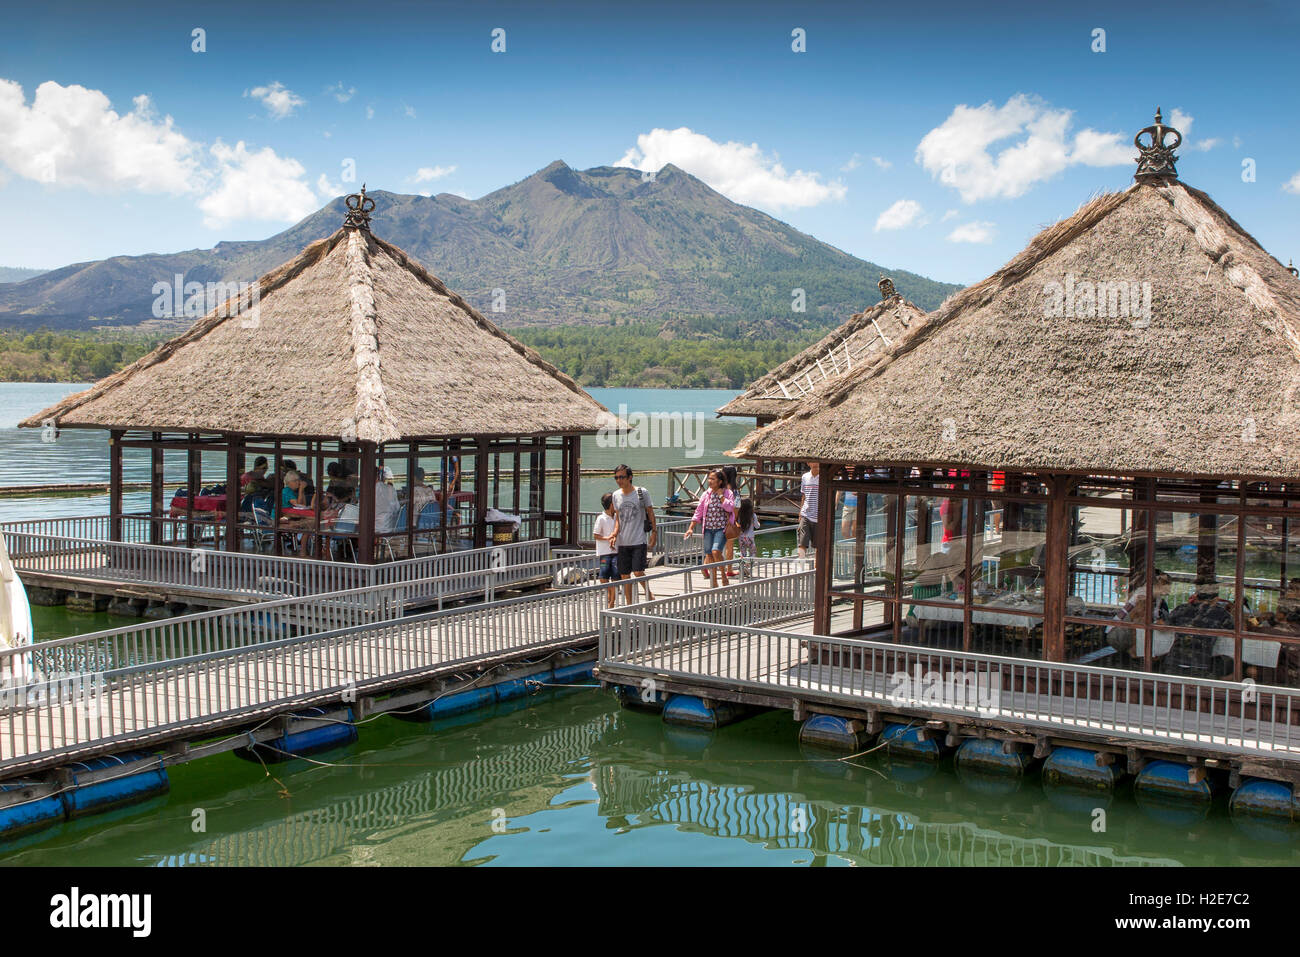 Indonesien, Bali, Kedisan, schwimmende Hotel am Gunung Batur innere Kratersee, Kunden in Ponton Speisesälen Stockfoto